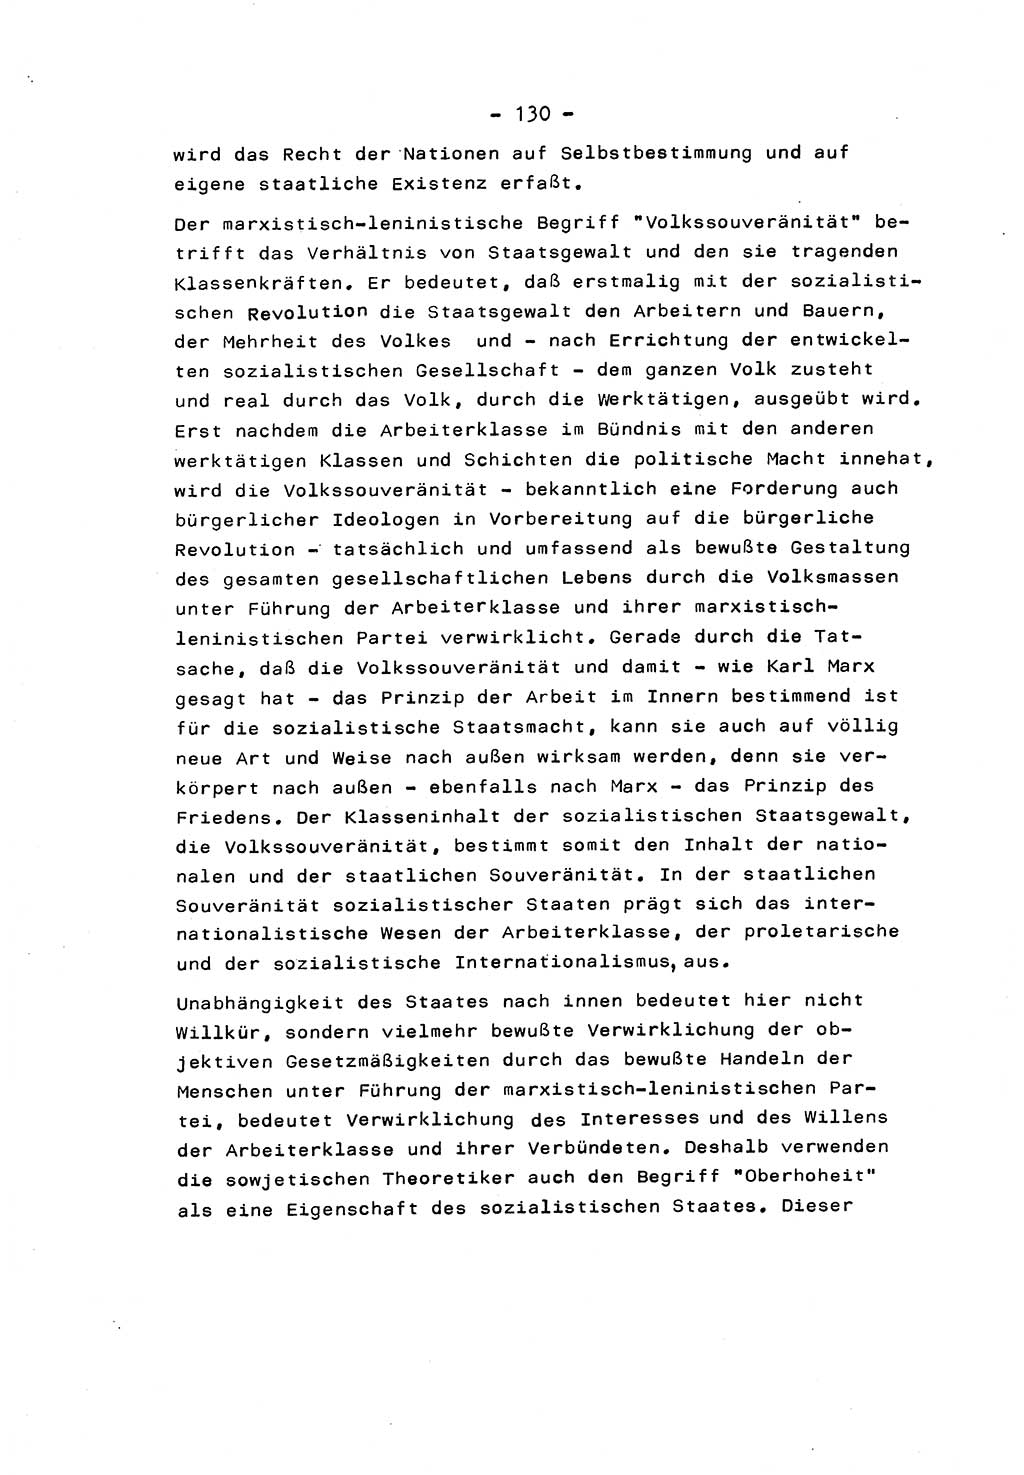 Marxistisch-leninistische Staats- und Rechtstheorie [Deutsche Demokratische Republik (DDR)] 1975, Seite 130 (ML St.-R.-Th. DDR 1975, S. 130)